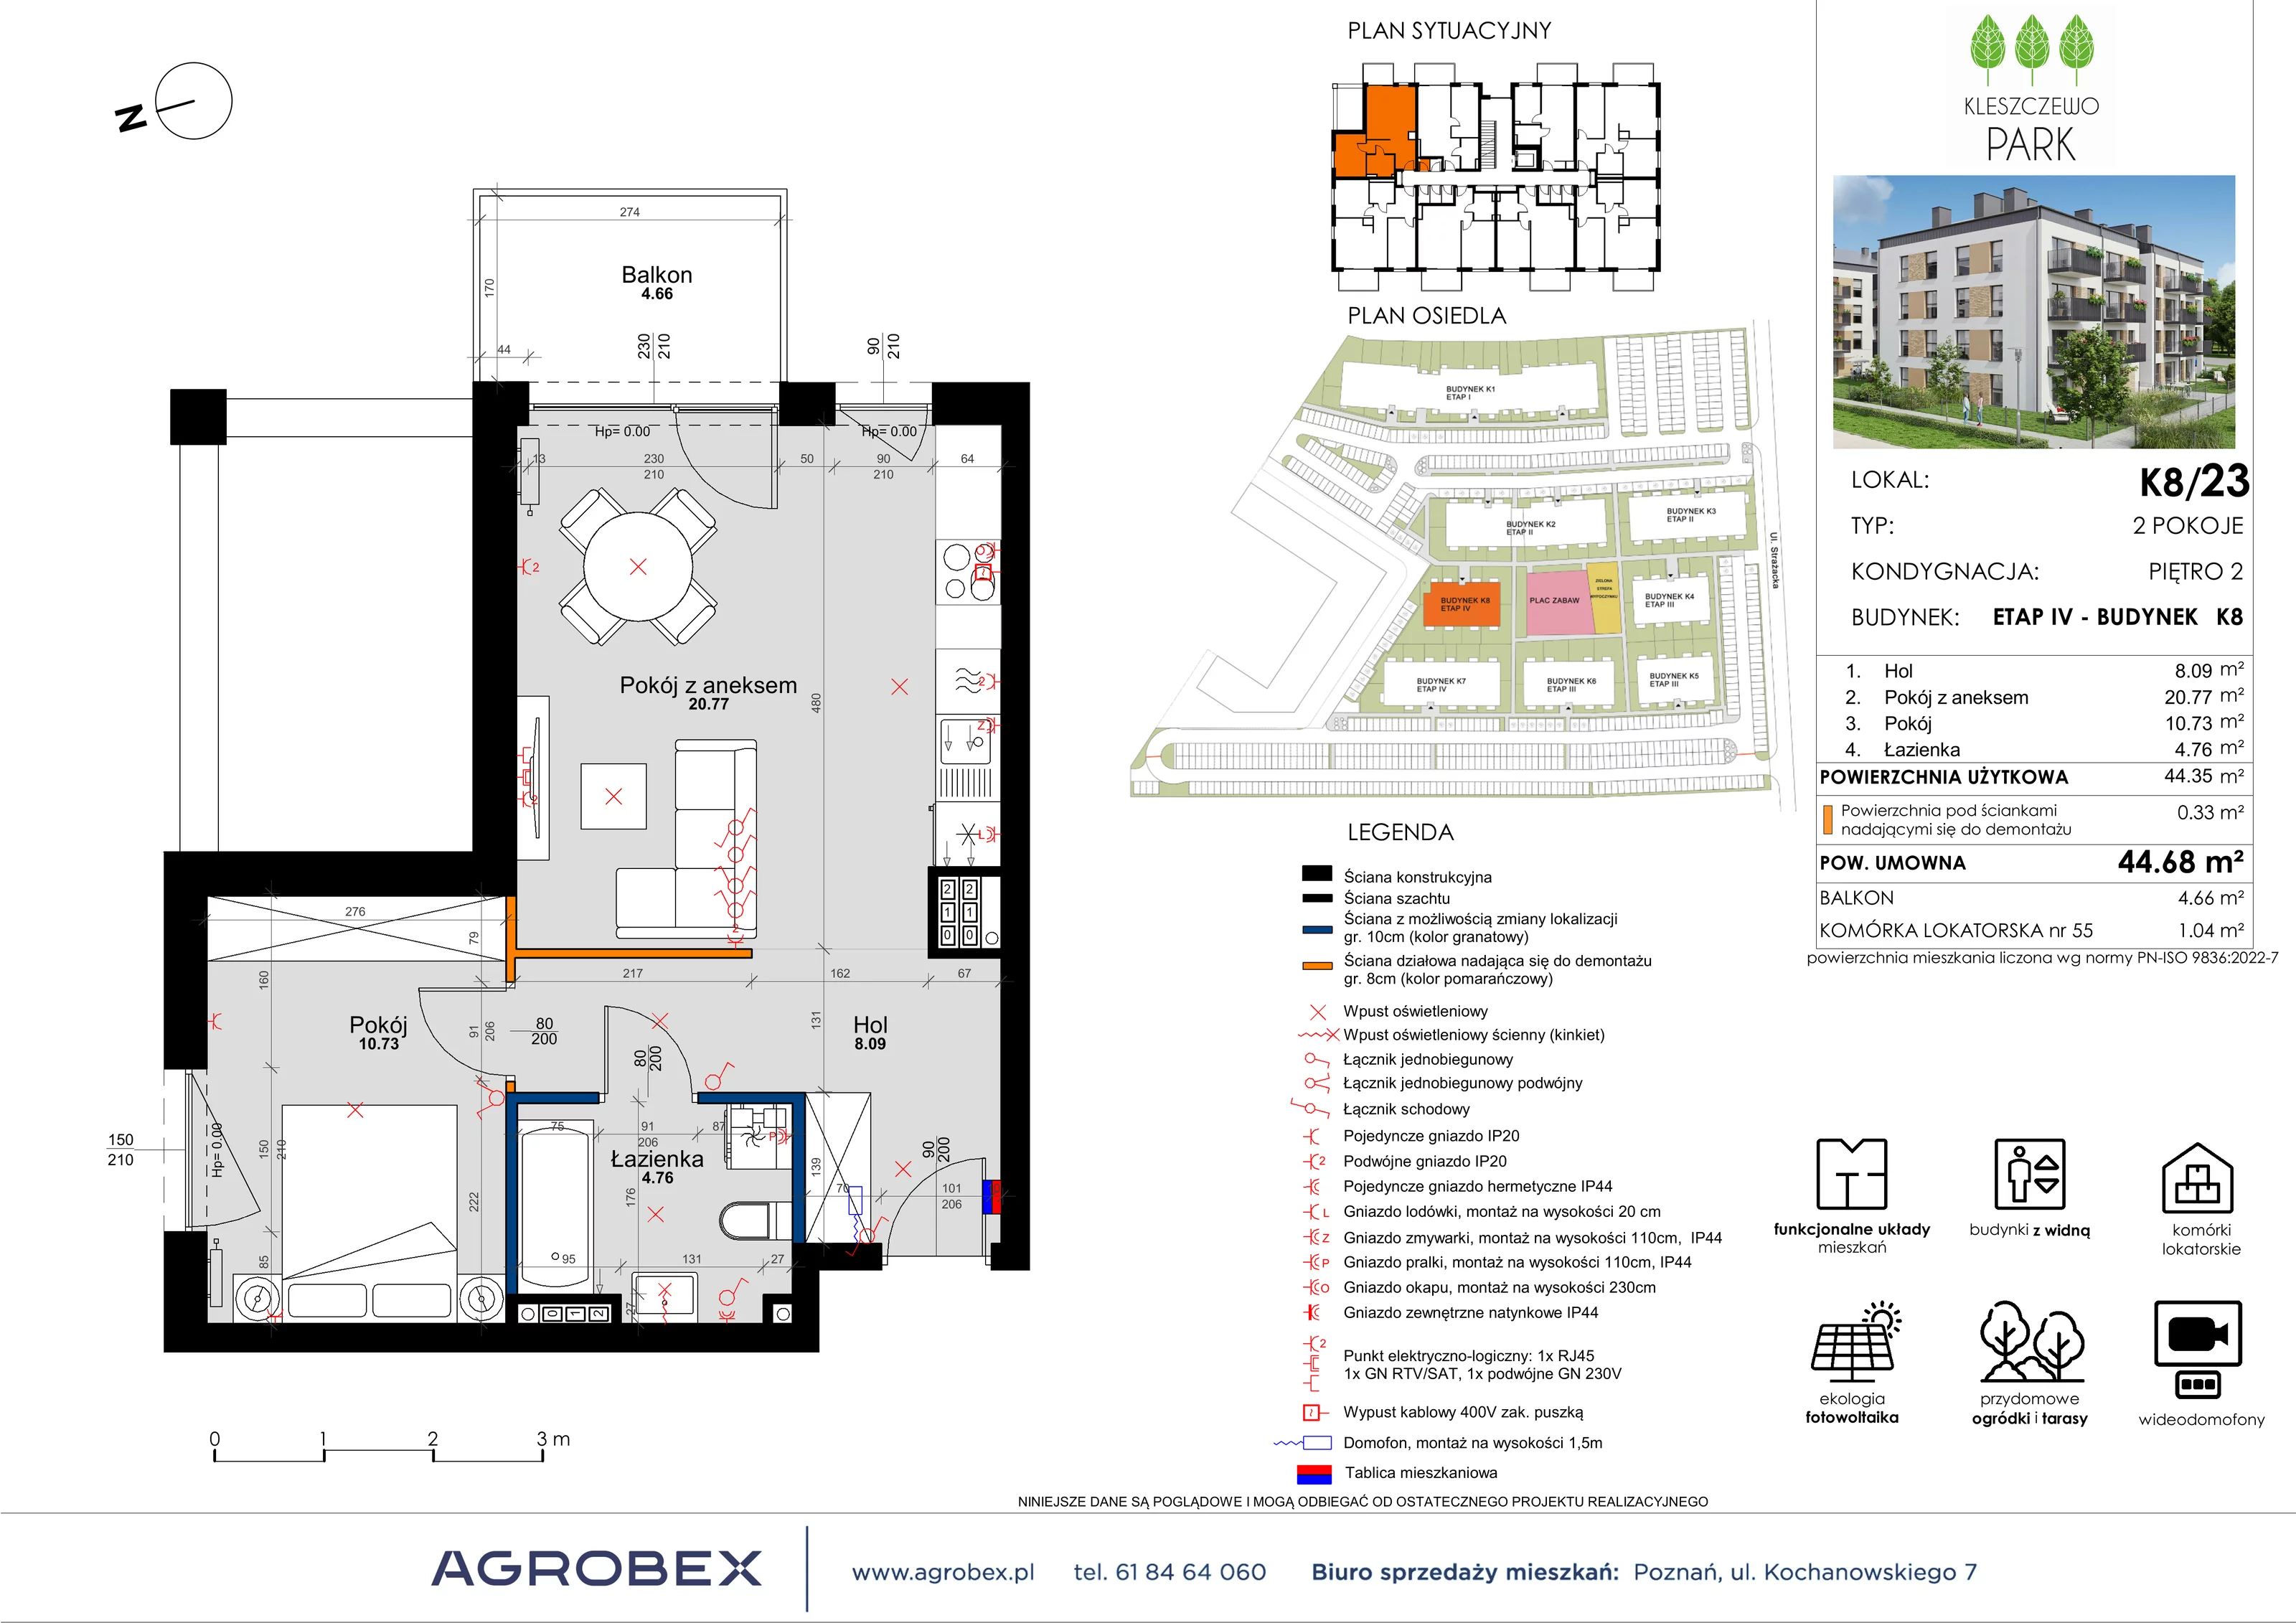 Mieszkanie 44,57 m², piętro 2, oferta nr K8/23, Kleszczewo Park, Kleszczewo, ul. Wiesławy Szymborskiej 1